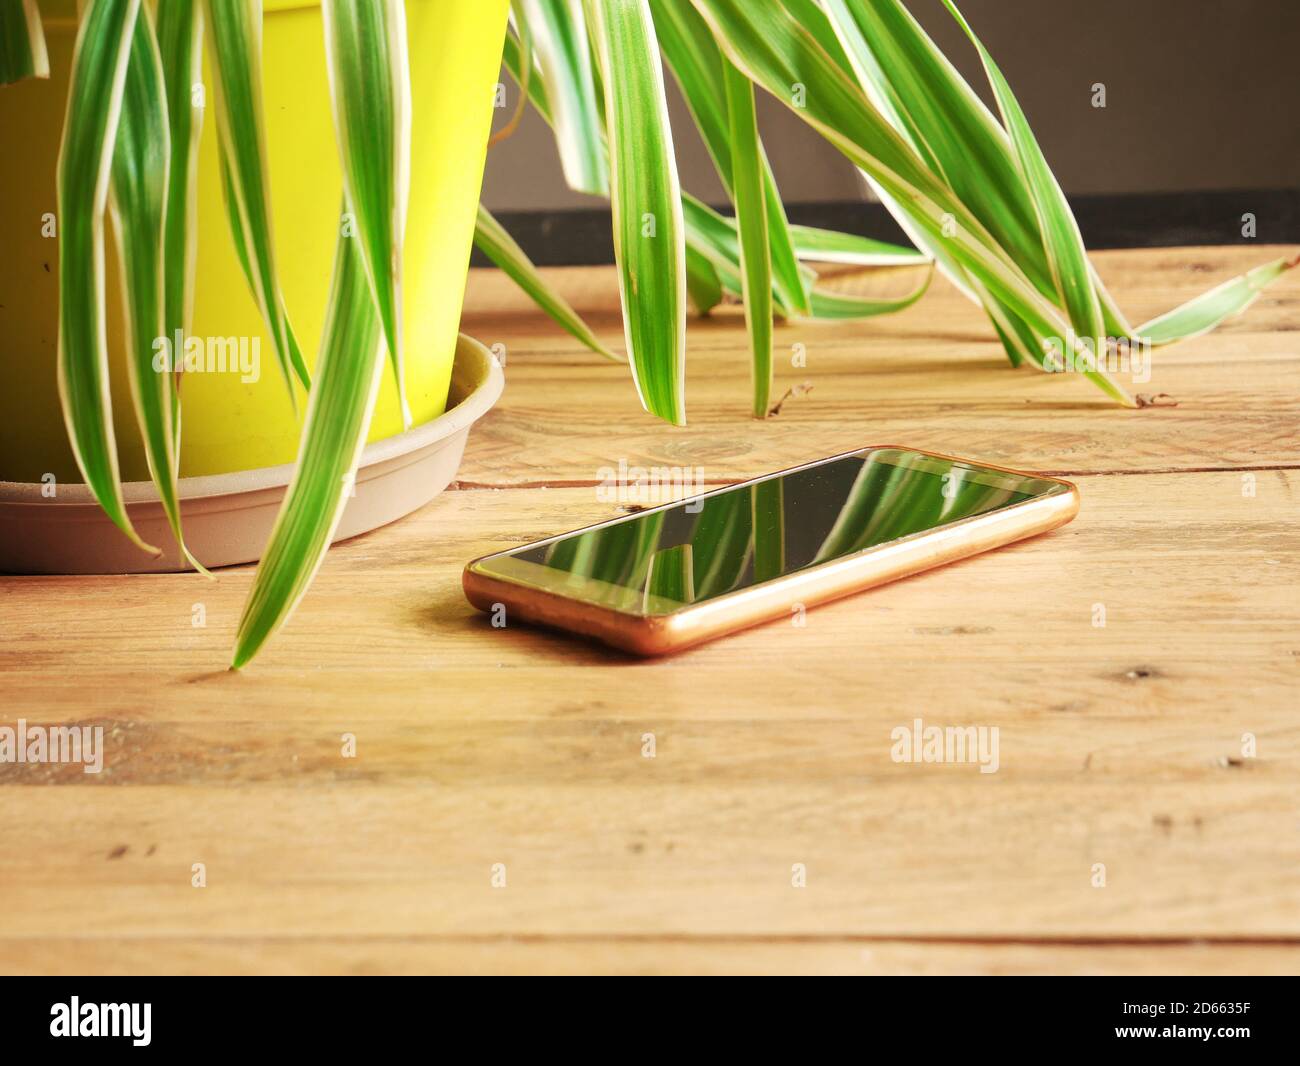 Handy auf einem Holztisch im Wohnzimmer, in der Nähe einer Pflanze  Stockfotografie - Alamy